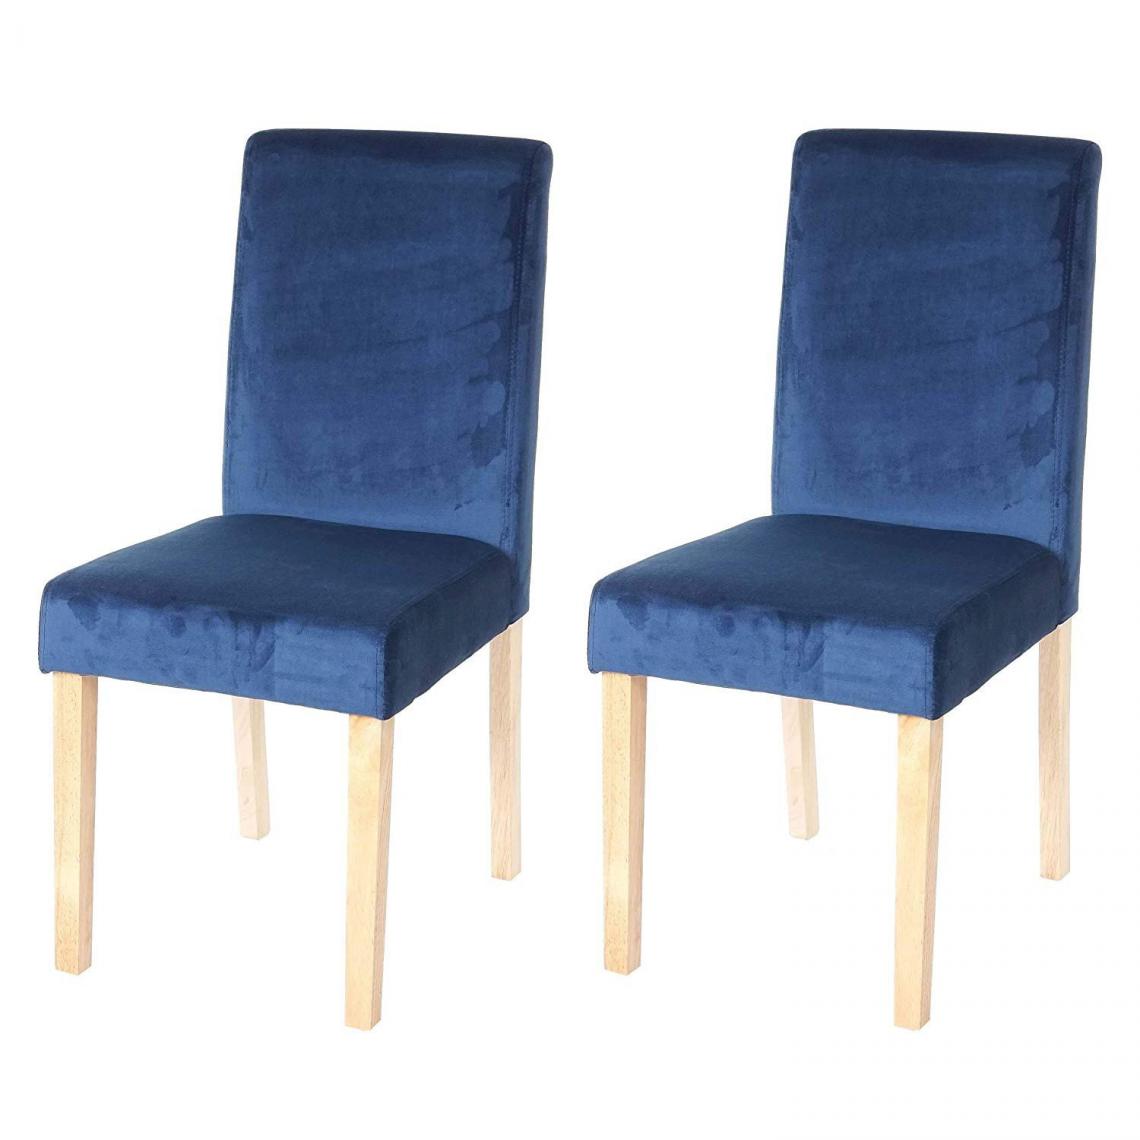 Decoshop26 - Lot de 2 chaises de salle à manger / cuisine en tissu velours bleu pétrole CDS04411 - Chaises